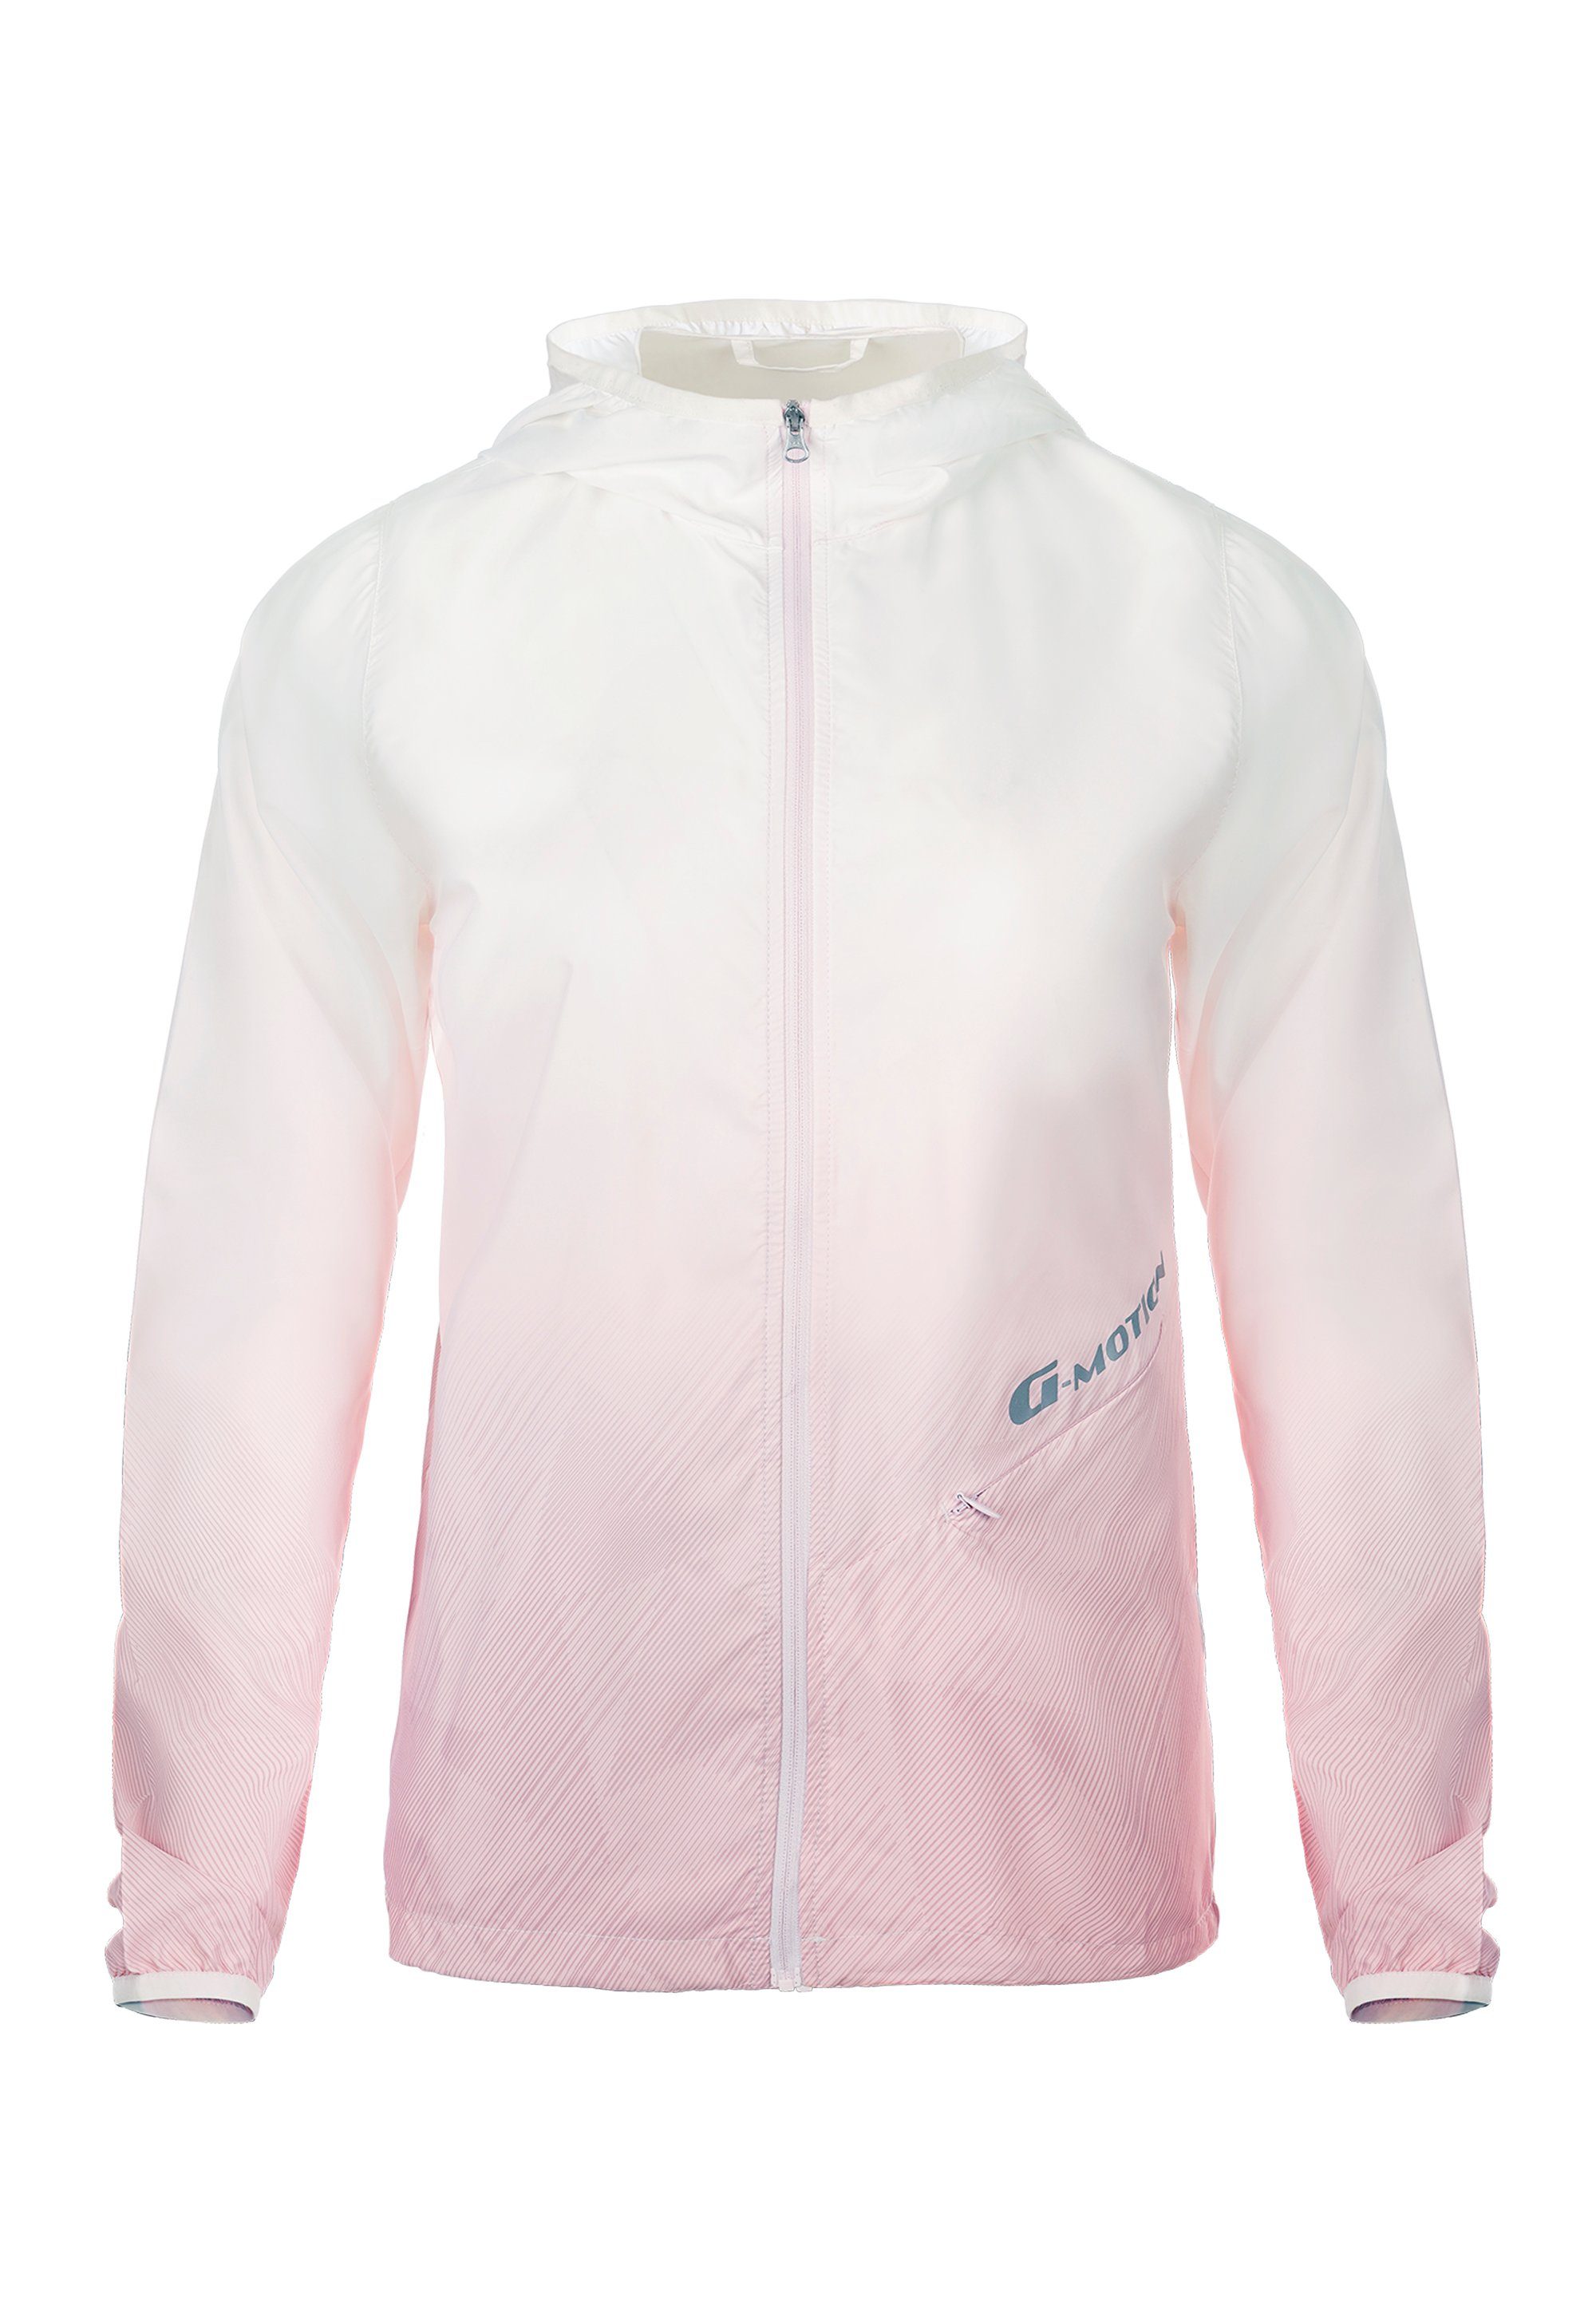 GIORDANO Outdoorjacke G Motion mi UV-Schutzfaktor 50+ pink-weiß